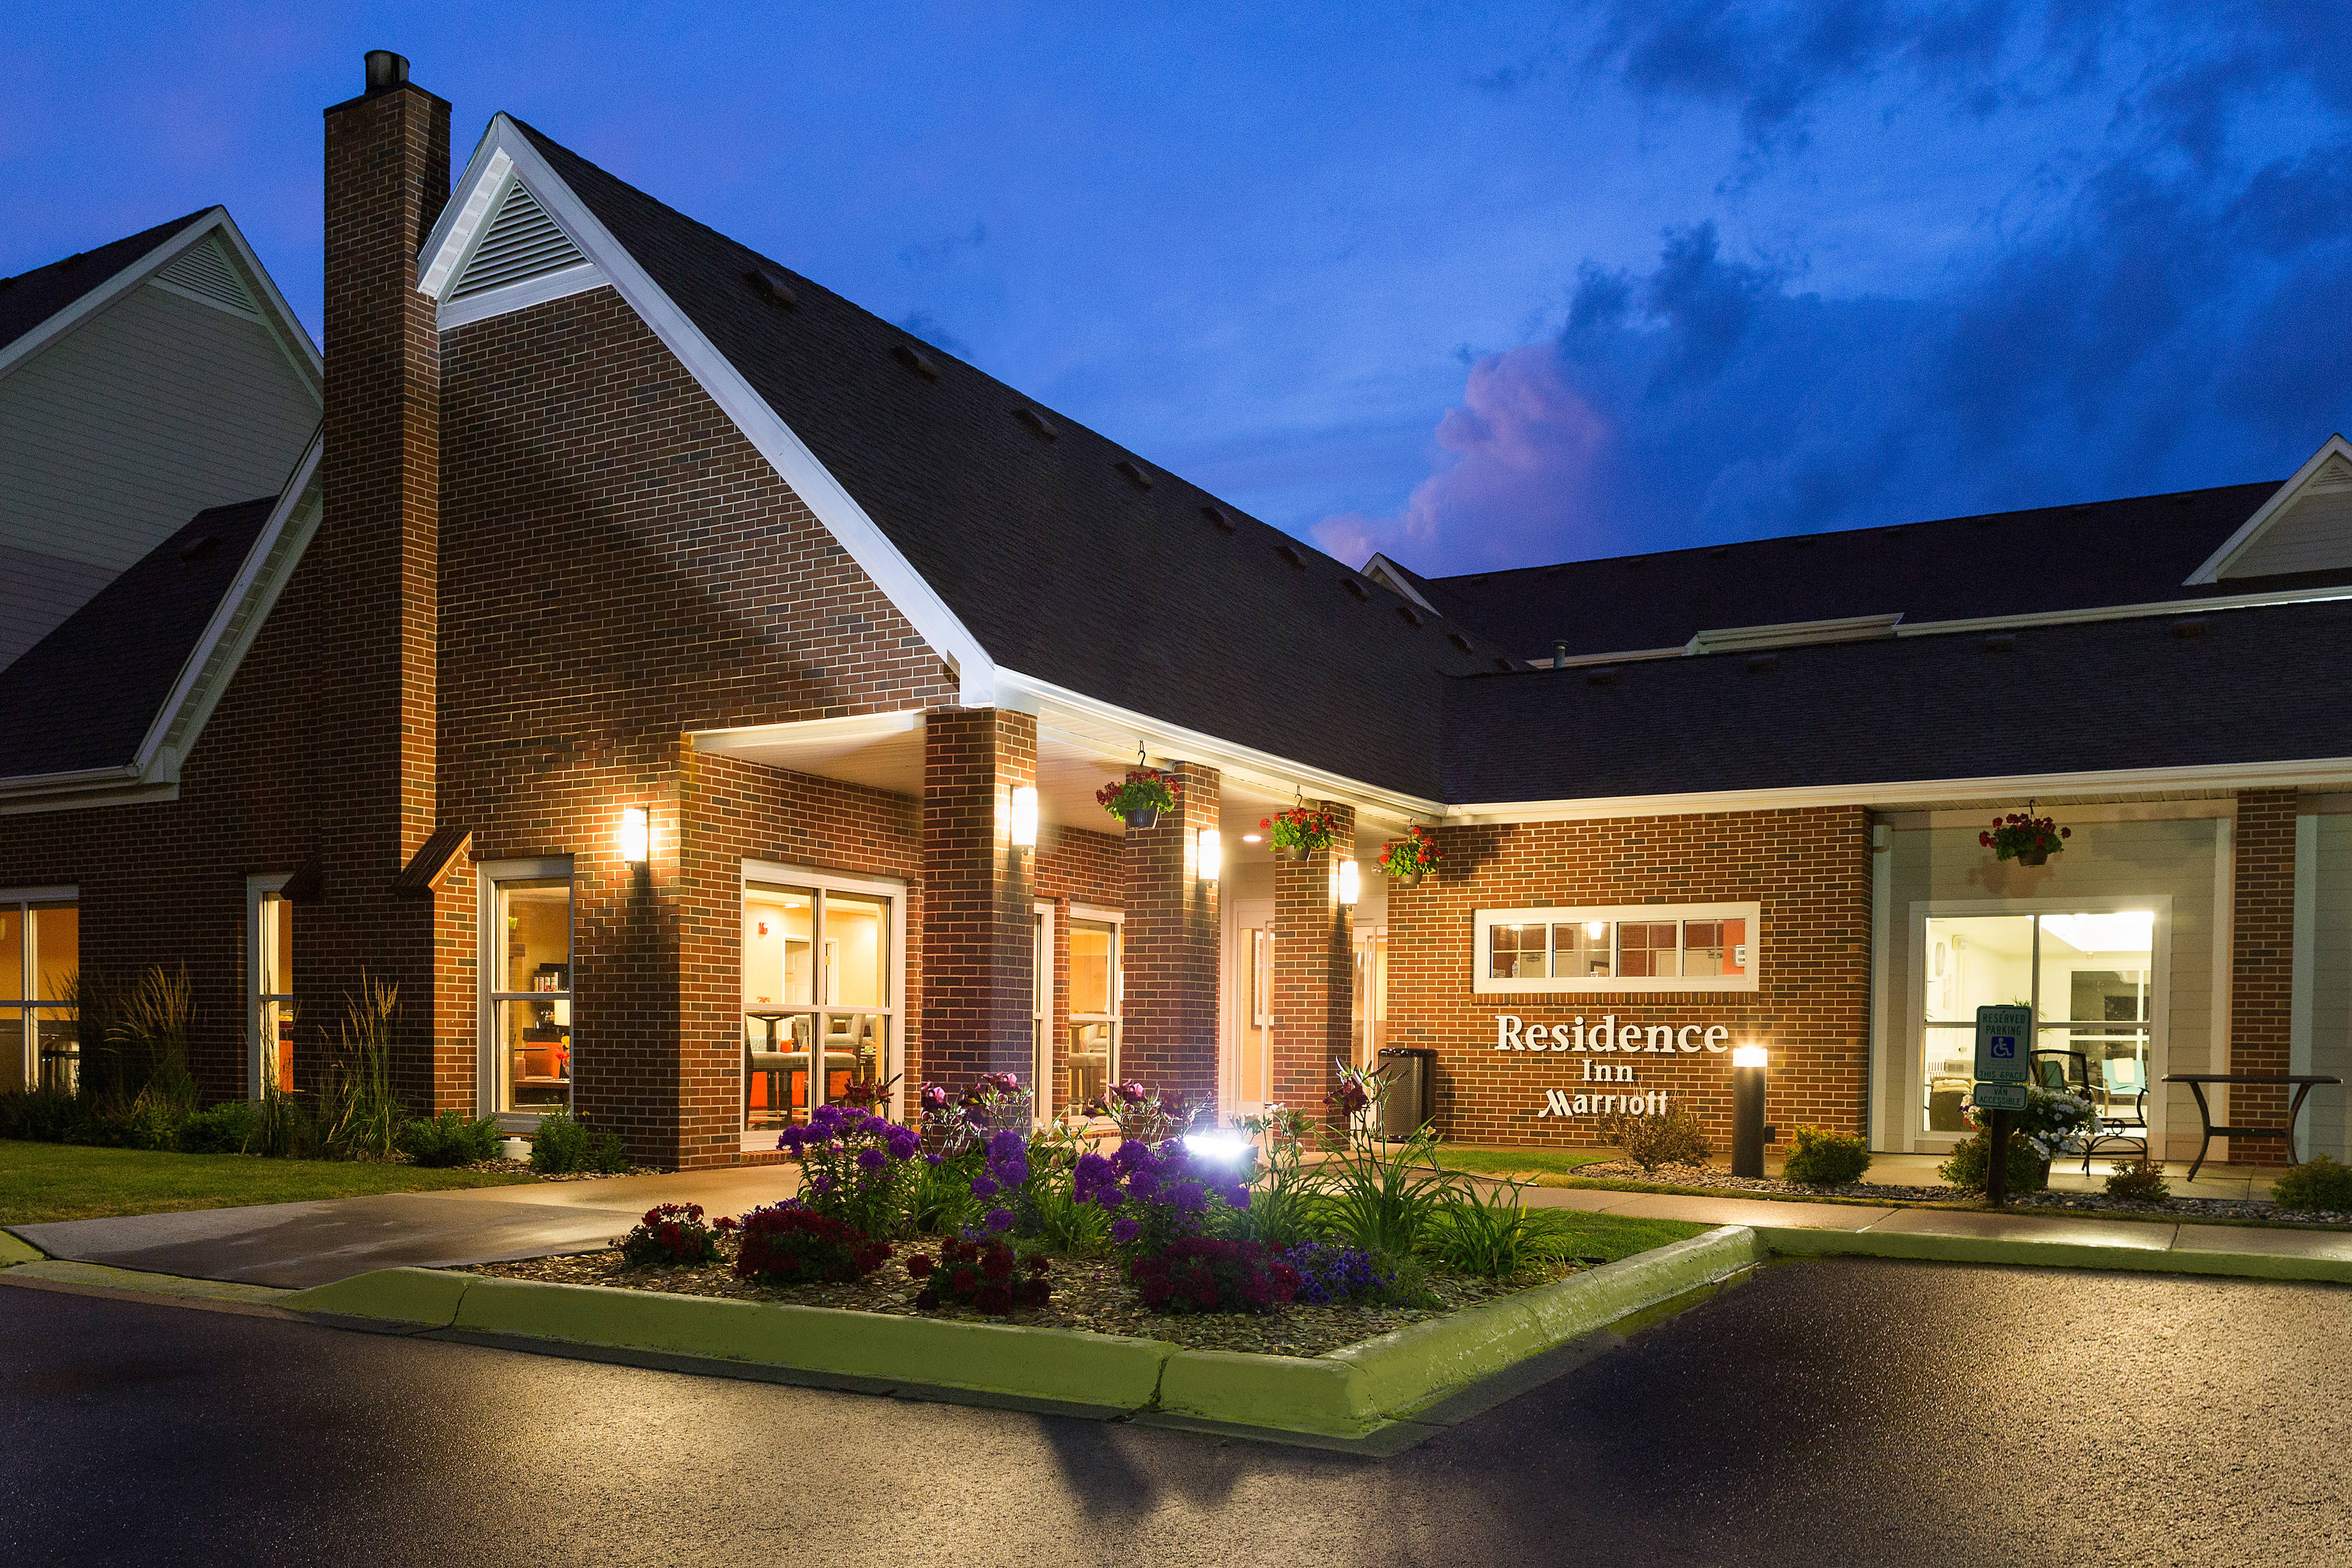 Photo of Residence Inn by Marriott Appleton, Appleton, WI